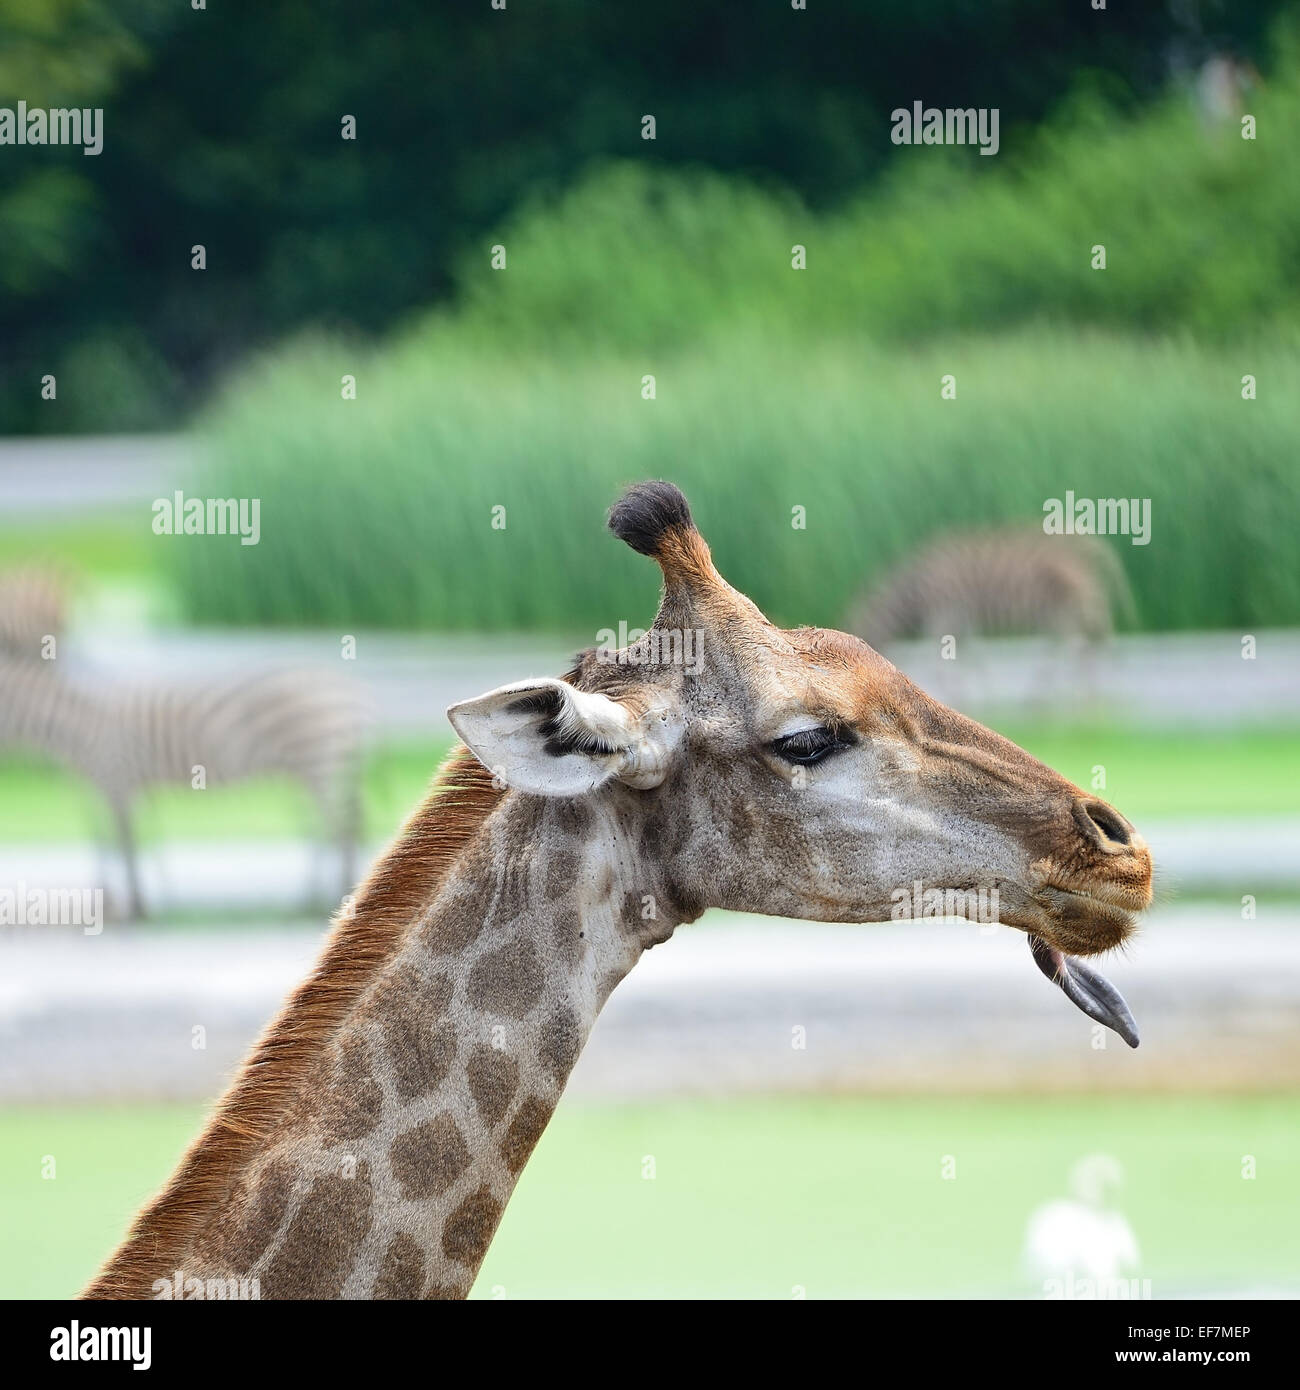 Funny face of Giraffe head Stock Photo